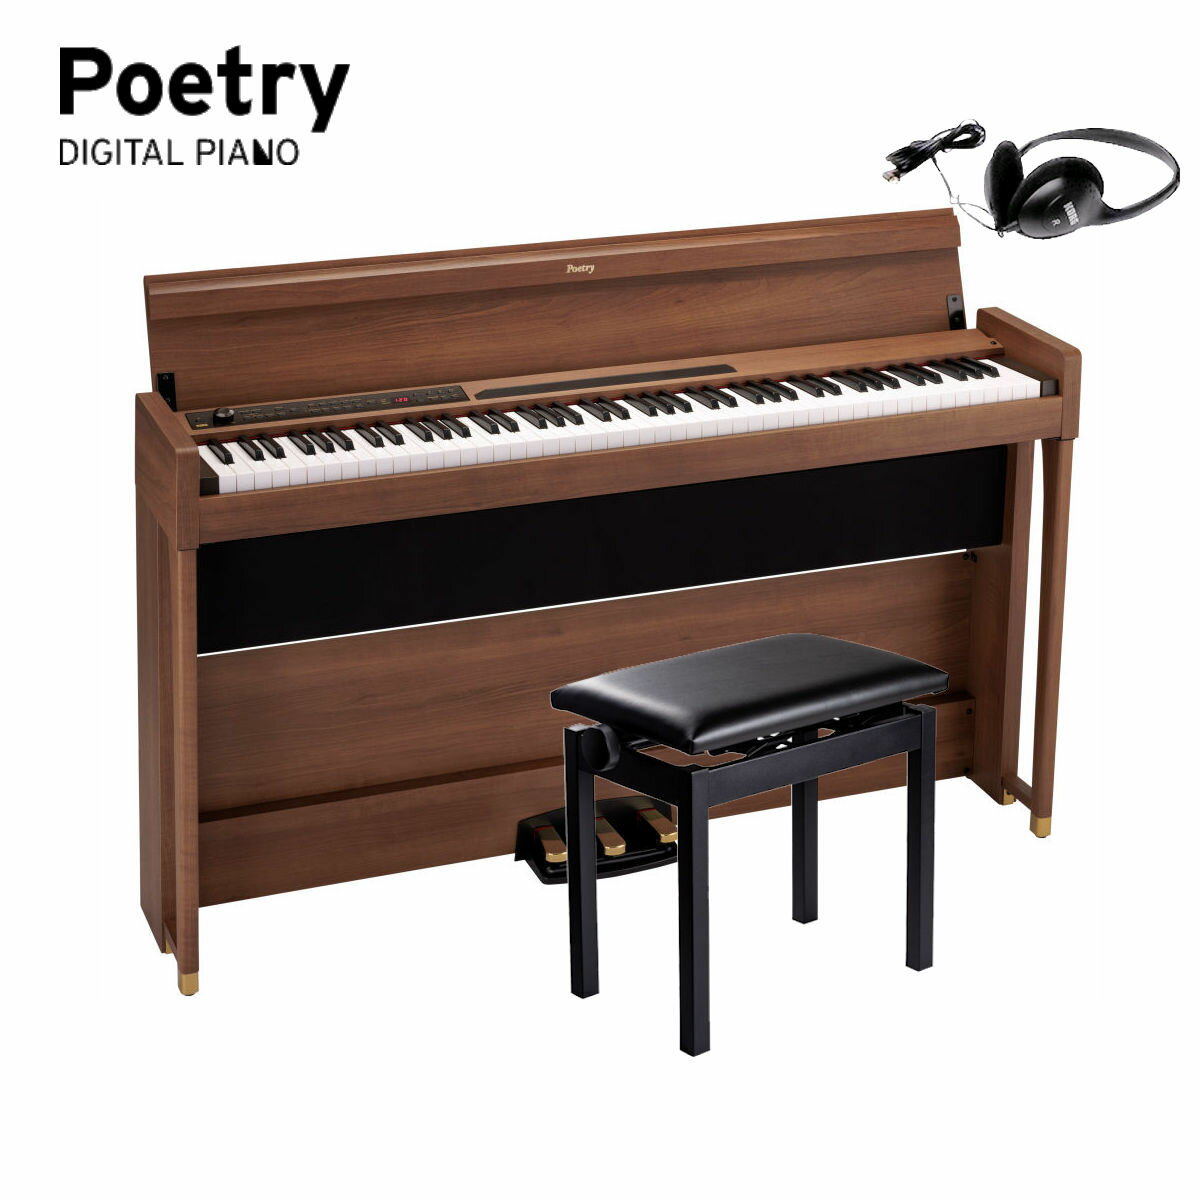 KORG　Poetry コルグ 電子ピアノ Poetic Brown（木目調仕上げ） ショパンを弾きたくなるピアノ Poetry はピアノの詩人フレデリック・ショパンが生前最も愛したピアノ「PLEYEL（プレイエル）」と、著名なショパン・コンクールでも採用された世界最高峰のイタリアン・ピアノという、ショパンに縁のある2つのピアノ音色を搭載したユニークなデジタル・ピアノです。 19世紀に生まれ、当時の個体もあまり残っておらずなかなか聴くことができないゆえに、希少かつ垂涎の的である当時の「PLEYEL」サウンド。その高音質なサンプルを収録し搭載したデジタル・ピアノは、当時の音を現代に伝えつつ、定期的な調律やメンテナンスが不要な電子楽器としての扱いやすさも兼ね備えています。 クラシック音楽の作曲家、ピアニストとして高い評価を受けているショパンに焦点を当てた製品であるPoetryは、世界中のピアノ愛好家やショパン愛好家に、新たなショパン楽曲の楽しみ方を提供することでしょう。 ●ショパンに出会える2つのピアノ音色 ●美しい木目調のスタイリッシュな外観 ●心地よいタッチのRH-3鍵盤〜プレミアム・ジャパン・クオリティ ●ハーフ・ペダルにも対応、3本ペダルを標準装備 ●演奏をすぐさま記録。2パート・ソング・レコーダー ●メトロノーム、レイヤー、パートナー・モードなど、デジタル・ピアノならではの機能を搭載 ●ショパンの名曲をピアノ本体に50曲搭載 店頭、オンラインでご購入の上、アンケートにお答え頂いた先着100名さまに「Poetic Brown」の特製KDM-3メトロノームをプレゼント ショパンに出会える2つのピアノ音色 Poetryには、ショパンが33歳当時の1843年製PLEYELピアノと、世界的なショパン・コンクールでも採用されているイタリアン・コンサート・グランド・ピアノの2つのピアノ音色を搭載しています。 PLEYELはピアノ筐体に使われているウォルナット材の木の温もりを感じさせる味わい深い響きが他の多くのピアノと異なる特徴です。さらによりPLEYELを体感できるよう、実機と同じ80鍵盤の音色PLEYEL3では、ピッチを430Hzに設定することで、ショパンが当時この音で弾いて聴いていたと考えられるものを忠実に再現した音色になります。 イタリアン・ピアノは華やかで透明感があり、豊かな表現力を持つサウンドです。同じ楽曲の演奏でも現代風に奏でるこのピアノは、時代を超えて愛されるあの作曲家がもし現代に存在したら、きっとその作品作りに刺激を受けたであろう、そんな想像を掻き立てます。 美しい木目調のスタイリッシュな外観 「Poetic Brown」と名付けた美しくエレガントな木目調の外観は、ショパンの纏う優しい雰囲気をイメージし、さらにペダルや足先にゴールドの装飾を入れ、上質な雰囲気に仕上げました。奥行きはわずか26センチ（※転倒防止金具除く）というスリムさを実現し、蓋を閉めるとフラットになる便利さも兼ね備えています。 心地よいタッチのRH-3鍵盤〜プレミアム・ジャパン・クオリティ グランド・ピアノと同様に低音部では重く、高音部にいくほど軽くなるタッチを再現したリアル・ウェイテッド・ハンマー・アクション3（RH3）鍵盤を採用。高い連打性能で、早いパッセージでも演奏者の表現力を損なうことなく音の強弱まで再現します。この鍵盤は環境にも配慮しており、鍵盤のハンマー部に鉛を使用していません。また、タッチの強さによって5段階の音の出方（軽め、標準、重め、安定、一定）を設定できるキー・タッチ・コントロールに対応し、自分のタッチに合わせて演奏を楽しめます。 ハーフ・ペダルにも対応、3本ペダルを標準装備 ピアノの演奏に欠かすことのできないペダルは、アコースティック・ピアノ同様にダンパーに加えソフト、ソステヌートを使うことができる3本ペダルを標準装備。ダンパー、ソフトはハーフ・ペダルにも対応しており、より細やかな表現が行えます。 演奏をすぐさま記録。2パート・ソング・レコーダー 2パートのレコーダーを搭載しているので、自分の演奏を録音して客観的に聴き、演奏の上達に役立てることが可能です。ピアノ・ソングと同様の片手ずつの録音や、保存済みのソングに演奏を加える録音にも対応。録音したユーザー・ソングは再生時のテンポ変更も可能です。 メトロノーム、レイヤー、パートナー・モードなど、デジタル・ピアノならではの機能を搭載 レッスンに便利なメトロノームはワンタッチでオン / オフ可能。音色ボタンを2つ同時に押すだけで2つの音色を重ねる「レイヤー・モード」によって、ピアノにストリングスやビブラフォンなどを重ねての演奏も可能です。また鍵盤の左側と右側で分けて、2人の演奏者が同じ音域で演奏ができる「パートナー・モード」も搭載。先生と生徒、あるいは親子で、楽しくレッスンができます。 Bluetoothオーディオに対応 待望のBluetooth機能を搭載。iPhoneのようなスマートフォンやiPadなどのタブレットと無線で接続して、ミュージック・プレーヤーやYouTubeでいつも聴いている音楽と一緒にピアノの演奏を楽しむことができます。ピアノを演奏しない場合でも、Poetryを迫力のあるBluetoothスピーカーとして使用することで、スマートフォンやタブレットの音楽をお楽しみいただけます。 ショパンの名曲をピアノ本体に50曲搭載 ショパンの名曲50曲をピアノ本体に搭載。これらはイタリアン・ピアノ音色とPLEYEL音色で聴き比べが可能です。またその中から厳選した23曲を収録したピアノ演奏用の譜面が付属しており、このピアノを手に入れればすぐにショパン楽曲の演奏を弾いて、聴いて楽しむことができます（その他に音色デモ・ソングが10曲搭載されています）。 PLEYELの特徴 PLEYELというピアノは、ショパンがどうしても”シングル・アクション”を変えさせなかったという逸話のあるピアノです。またPLEYEL社もショパンが亡くなった後も14年間この方式を変えませんでした。 シングル・アクションとは完全に鍵盤（ハンマー）を戻さないと次の打鍵ができず、速い連打が難しい構造の鍵盤です。現在のピアノは”ダブル・エスケープメント”という構造で、ハンマーが戻りきらなくても打鍵ができるので速い連打が可能になり、超絶技巧で派手な演奏を実現できる様になっています。 現代のピアノはコンサート・ホールのような大きな会場で響かせられるように進化してきましたが、19世紀の中頃まではコンサート・ホールのような大きな会場は無く、サロン・コンサートが主でした。そのころの絵を見るとショパンがサロンで弾いていて、女性がピアノに肘をかけて聞き入っているような光景を見ることができます。 さらに、この少し前の時代にピアノという楽器はなく、鍵盤楽器といえばチェンバロとパイプ・オルガンでした。このチェンバロという楽器はオーケストラの中で使えるほど大きな音がしますが、逆に小さな音で弾くのが難しい楽器でした。チェンバロをサロンなどで演奏するとかなり大きい音になります。その問題を解決するためにピアノの前身である「フォルテピアノ」という楽器が登場し、弱い音も弾けるハンマー・アクションが発明されました。当時は小さな音量で弾けることが最も重要だったと考えられます。 またPLEYELにはミュート板がついています。高音部は音が小さく低音部は音が大きいため、弾いたときにバランスが悪くなるのでこのミュート板を装着し、中低音域の音量を下げて高音域へクレッシェンドさせて音楽的にバランスをとるようになっています。そのようなことも含めて、PLEYELはやはりフォルテッシモではなくて、繊細な表現で美しく音楽を語るピアノであると考えられます。 　SPEC カラー Poetic Brown（木目調仕上げ） 鍵盤 RH3（リアル・ウェイテッド・ハンマー・アクション3）、鍵盤：88鍵（A0 ~ C8） タッチ・カーブ 5種類 ピッチ トランスポーズ、マスター・チューニング 音律 3種類 音源 ステレオPCM音源 同時発音数 120（最大） 音色 30音色（10 x 3バンク） エフェクト ブリリアンス、リバーブ、コーラス（各3段階） レコーダー 2パート、最大14,000ノート（約100KByte） デモ・ソング 60曲 (音色デモ10曲、ショパン・ピアノ・ソング50曲) メトロノーム テンポ、拍子、音色、音量 ペダル ダンパー *、ソステヌート、ソフト*　 *はハーフ・ペダル対応 接続端子 LINE OUT、MIDI（IN、OUT）、ヘッドホン×2、ペダル、スピーカー コントロール 電源、VOLUME、PIANO SONG、TRANSPOSE、FUNCTION、TOUCH、BRILLIANCE、REVERB、CHORUS、BANK、音色 x10、DISPLAY、+、-、METRONOME、再生/一時停止、停止、録音、PART1、PART2 無線方式 Bluetooth（A2DP Sink） スピーカー 10cm ×2 アンプ出力 25w x2 電源 DC 24V 消費電力 18W 外形寸法（W×D×H） 1346x347x770mm、 1346x347x926mm（キー・カバーを開けた状態） 質量 36.7kg（専用スタンド込み） 付属品 ACアダプター、専用スタンド、ヘッドホン、ピアノ演奏用譜面（ショパン楽曲を23曲収録） アクセサリー（別売） ピアノ椅子PC-300（BR、BK、WH）